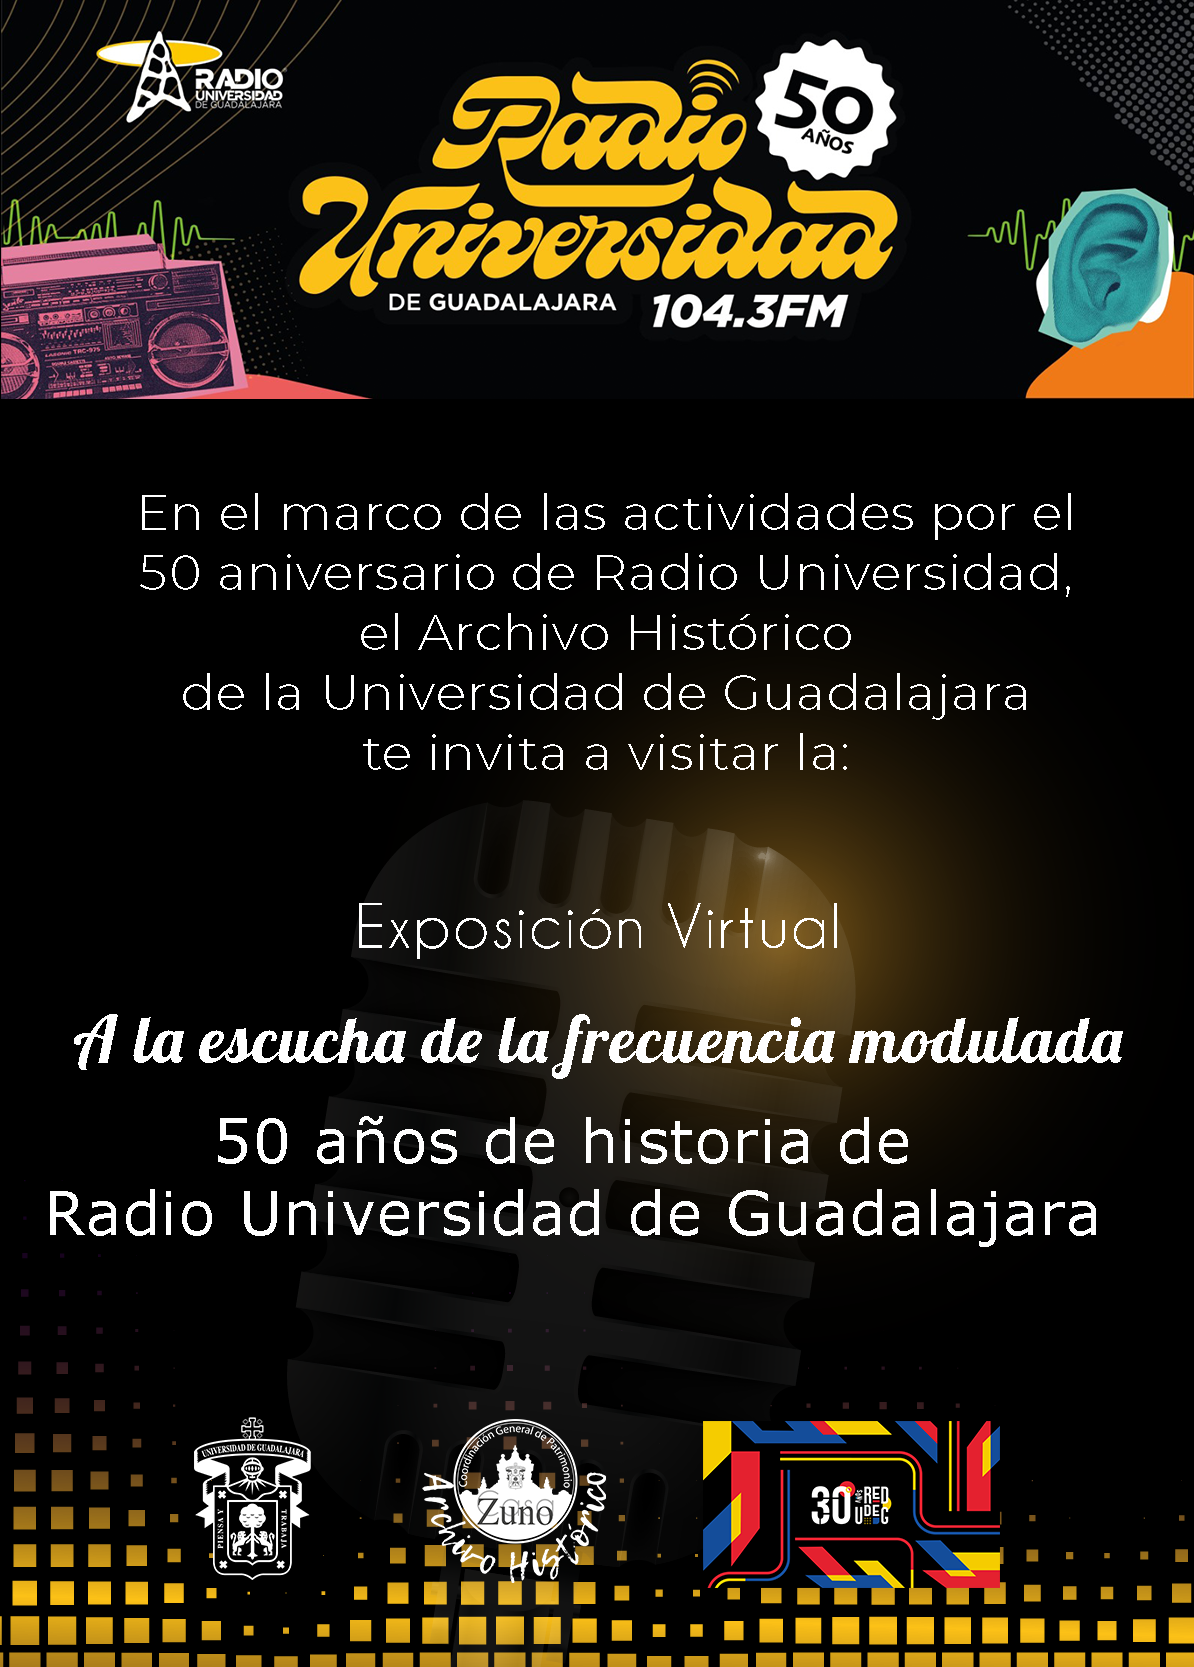 A la escucha de la frecuencia modulada 50 años de historia de  Radio Universidad de Guadalajara